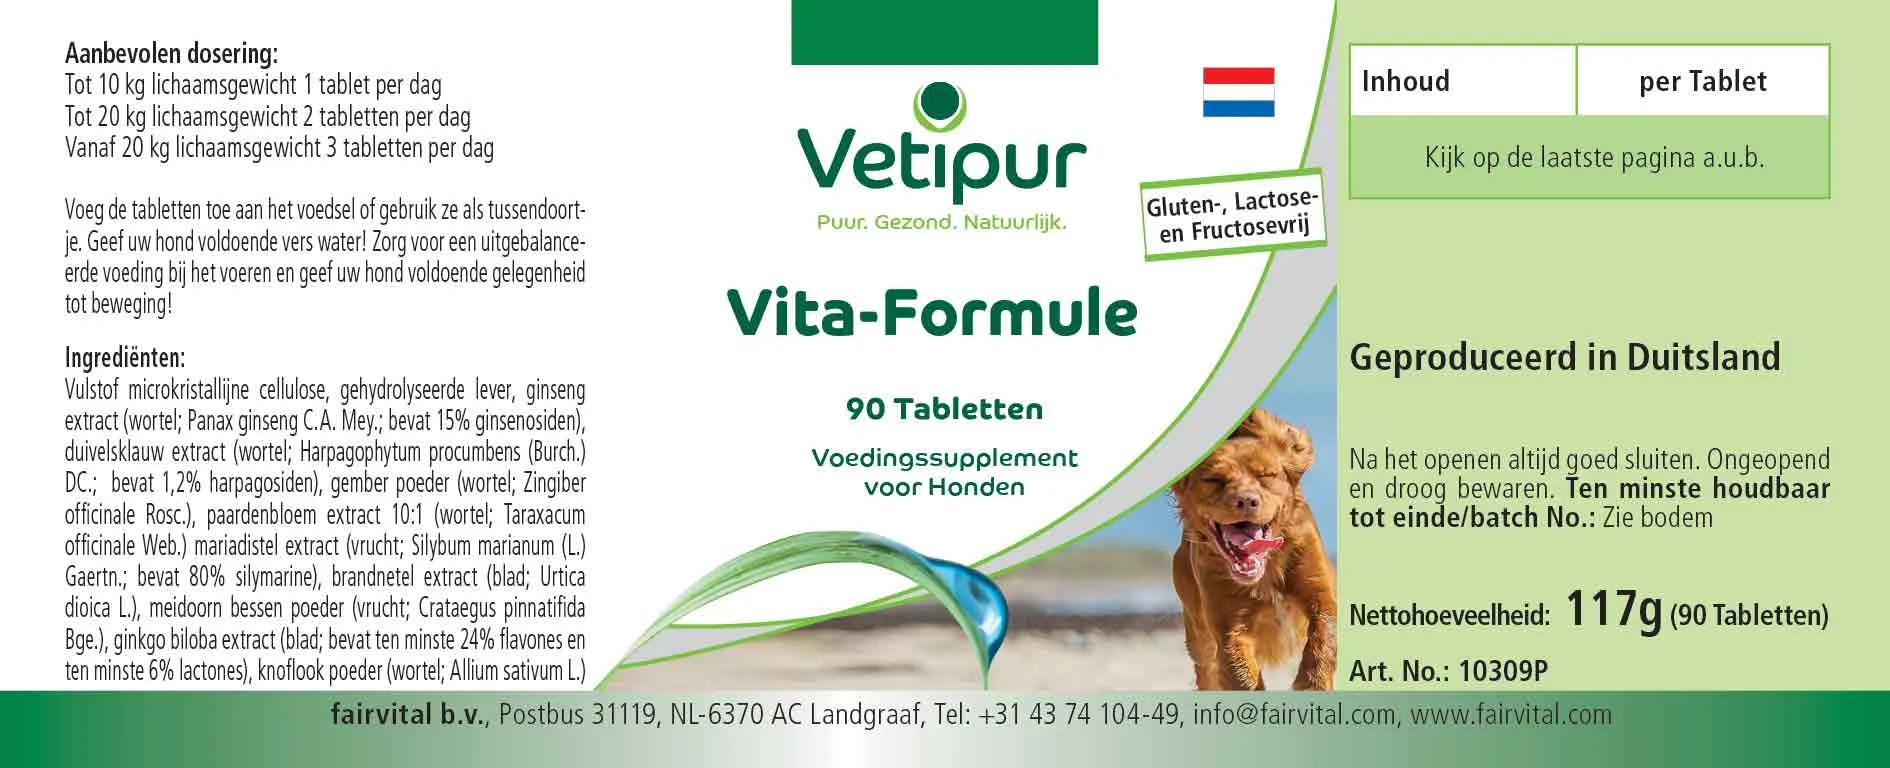 Vita Formula - 90 tablets for dogs | Vetipur